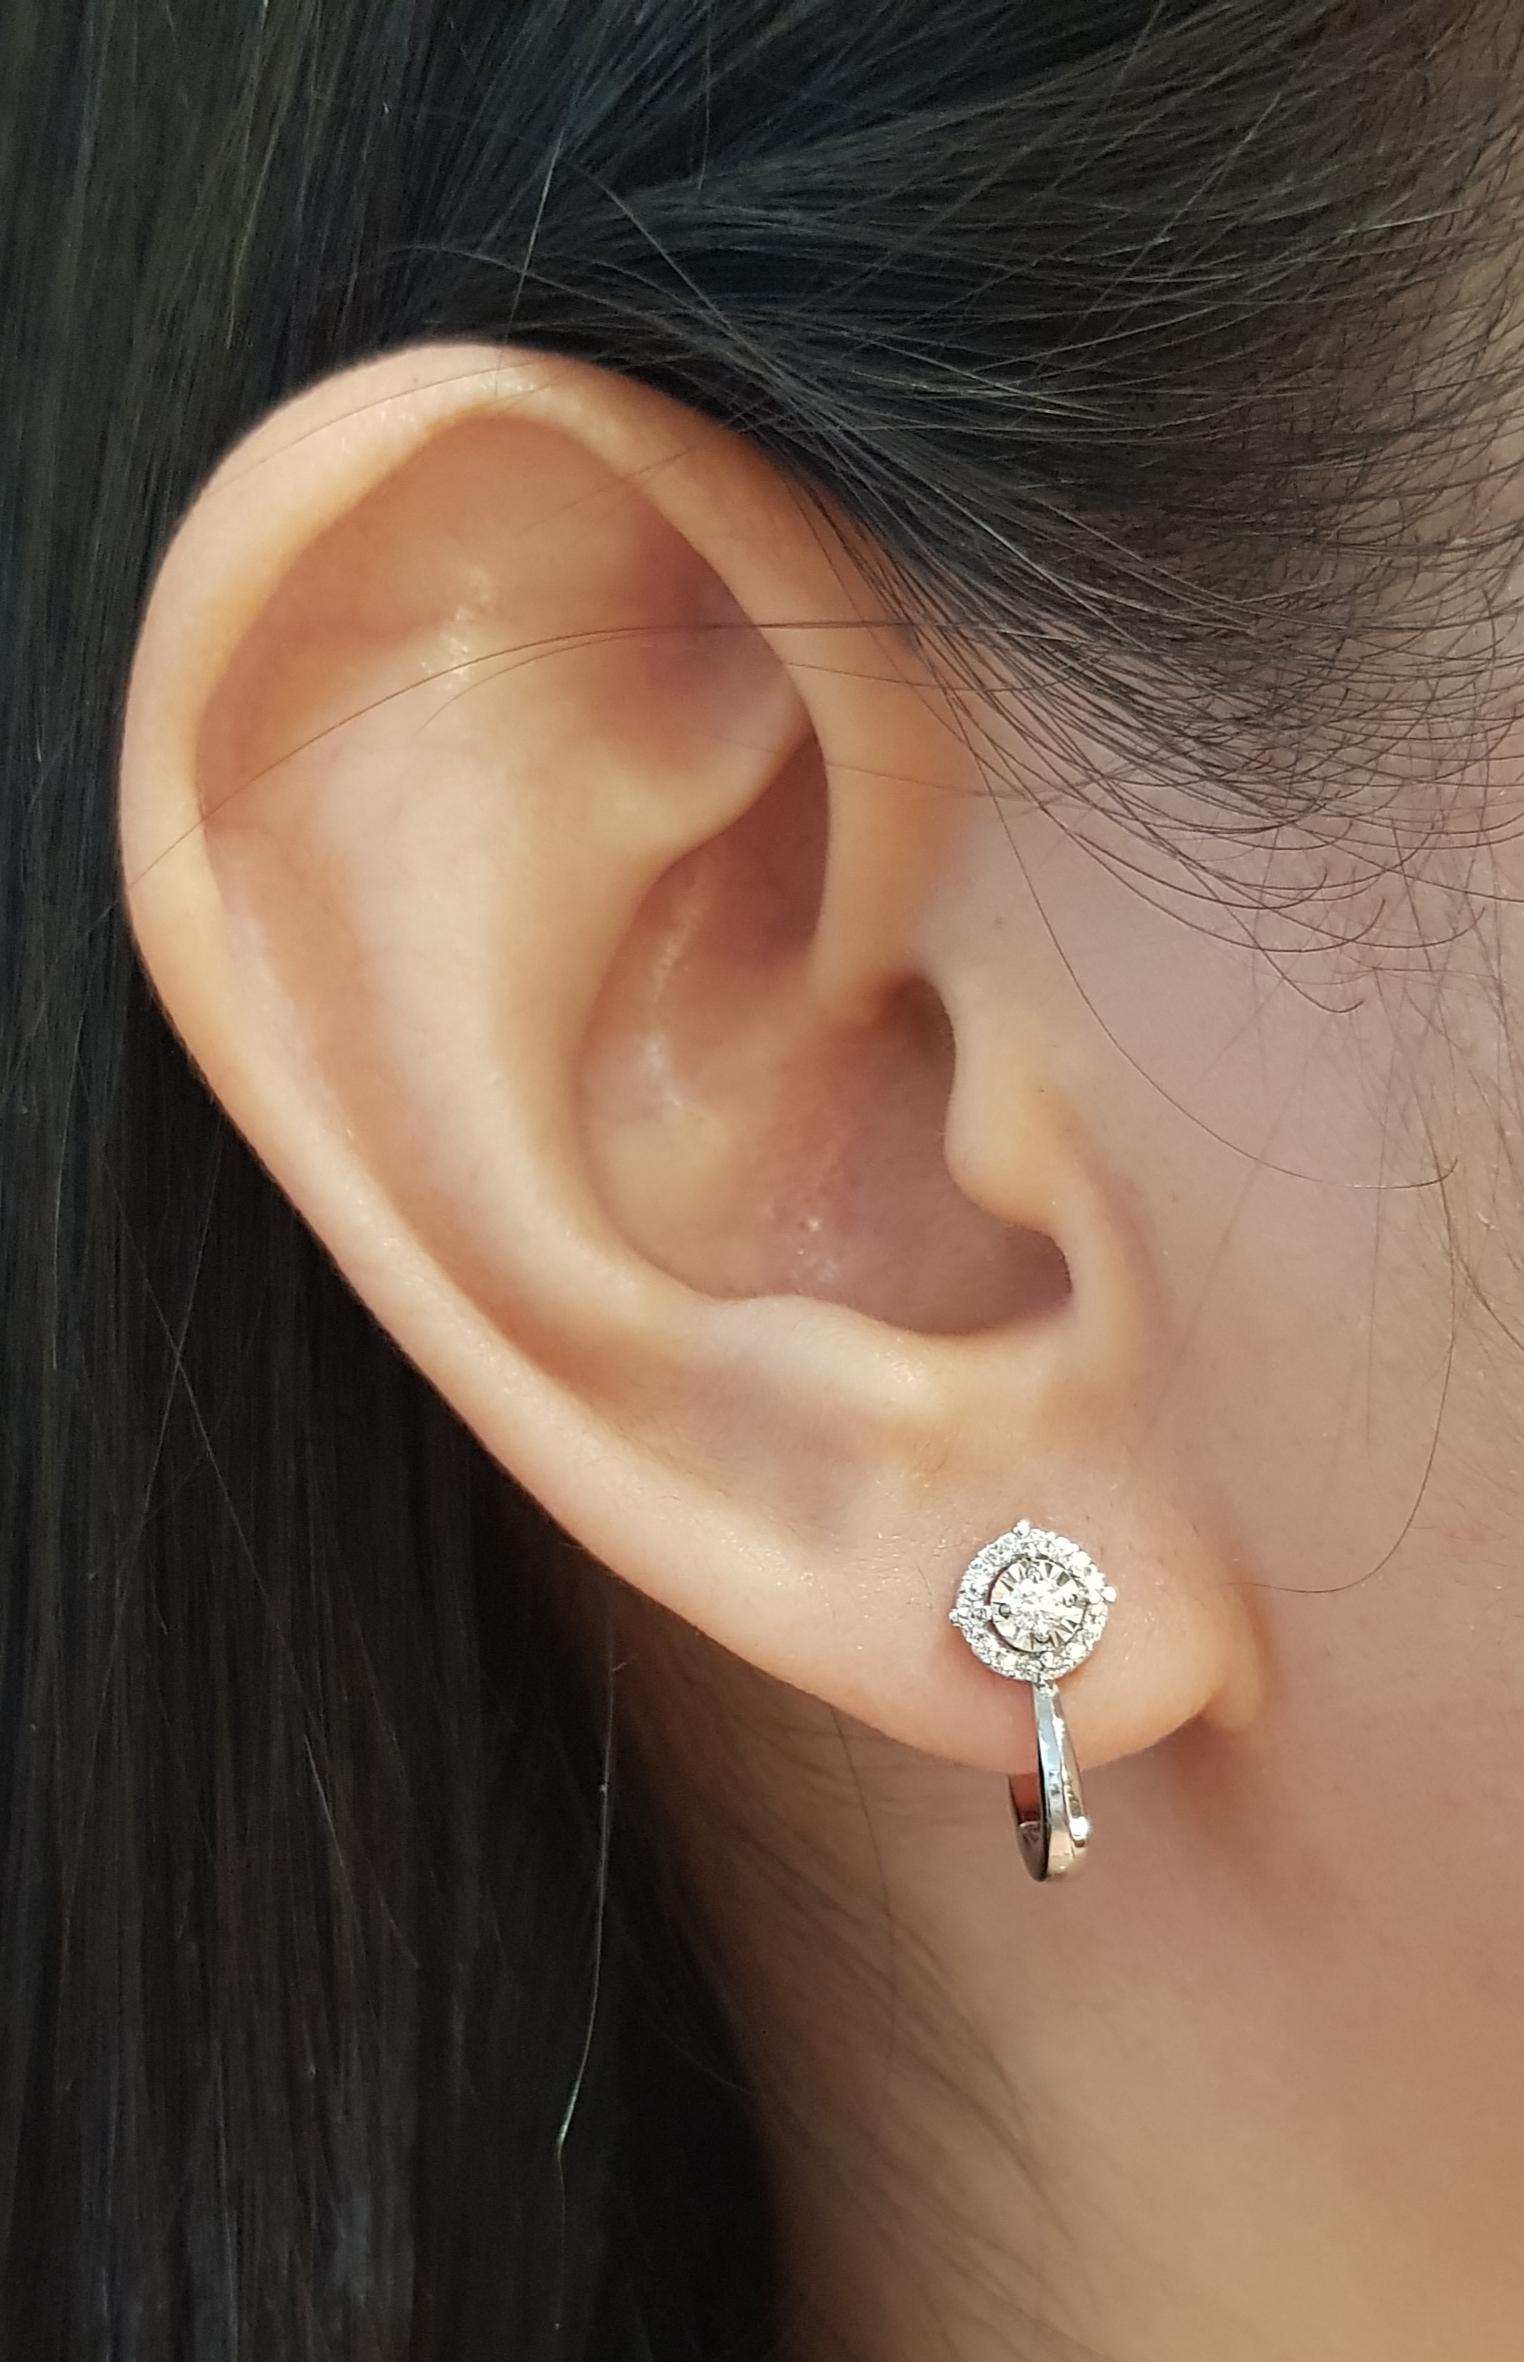 Boucles d'oreilles en diamant de 0,17 carat montées sur or blanc 18 carats

Largeur : 0,7 cm 
Longueur : 1.5 cm
Poids total : 3,47 grammes

